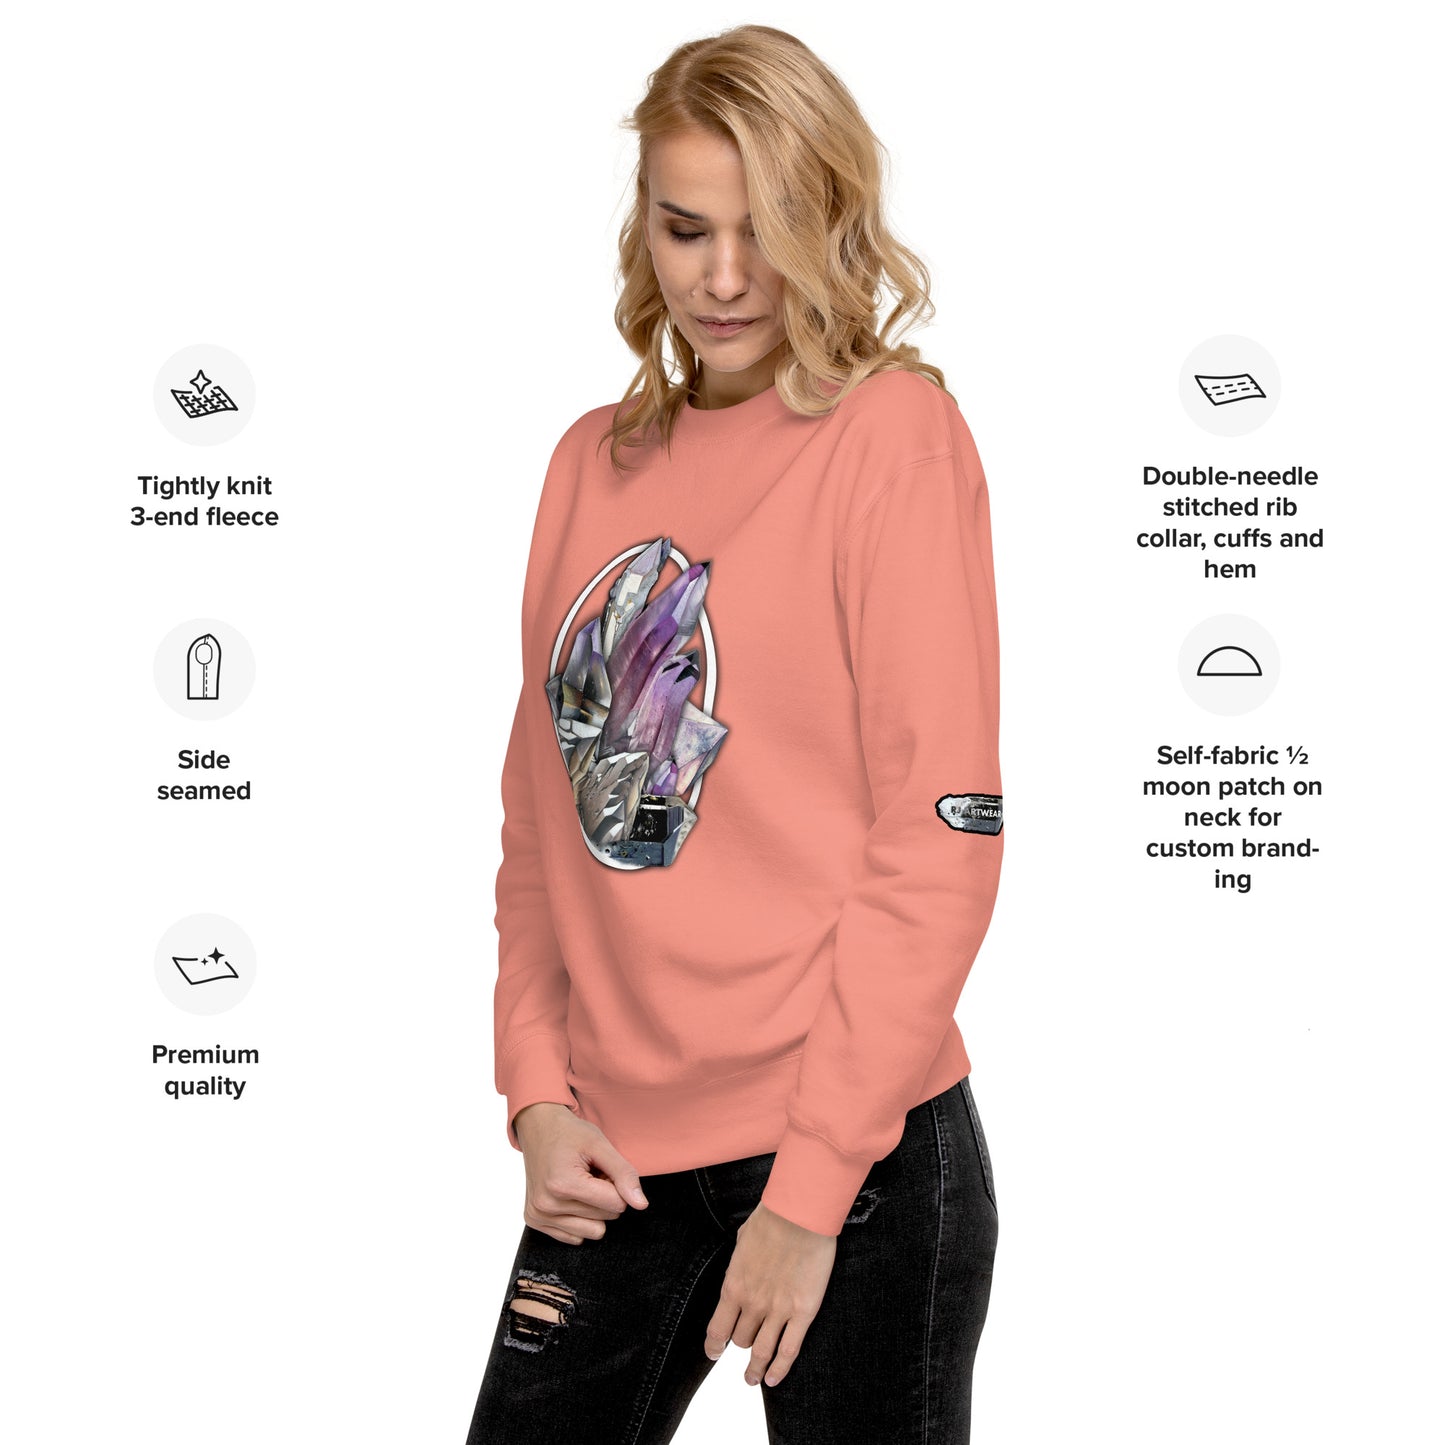 Quartz Collage Oval - Unisex Premium Sweatshirt